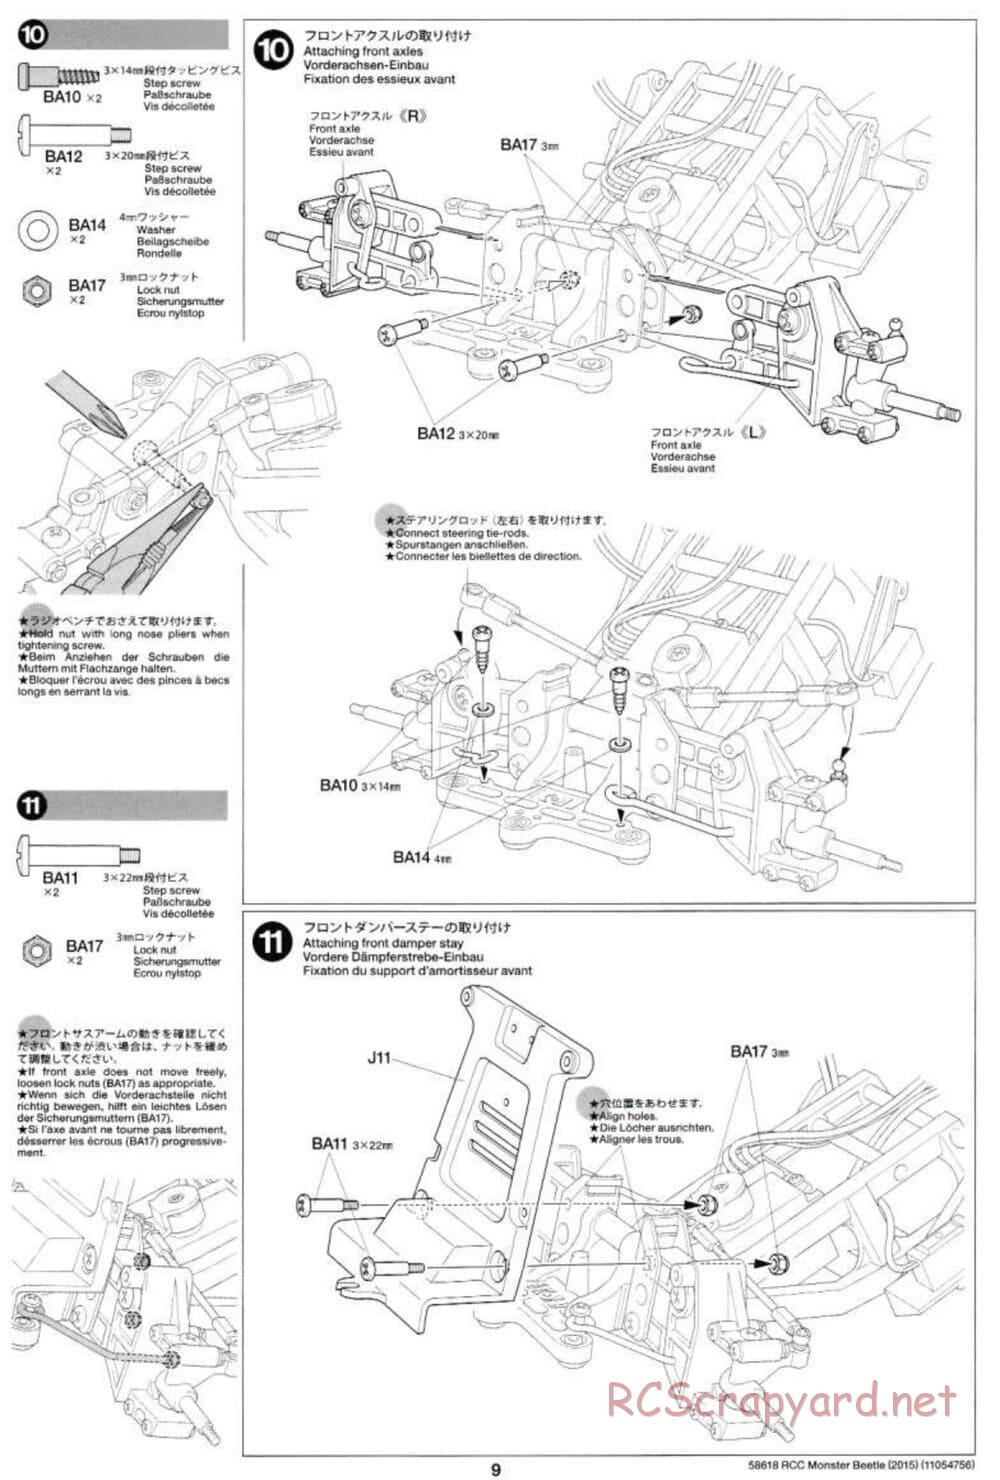 Tamiya - Monster Beetle 2015 - ORV Chassis - Manual - Page 9